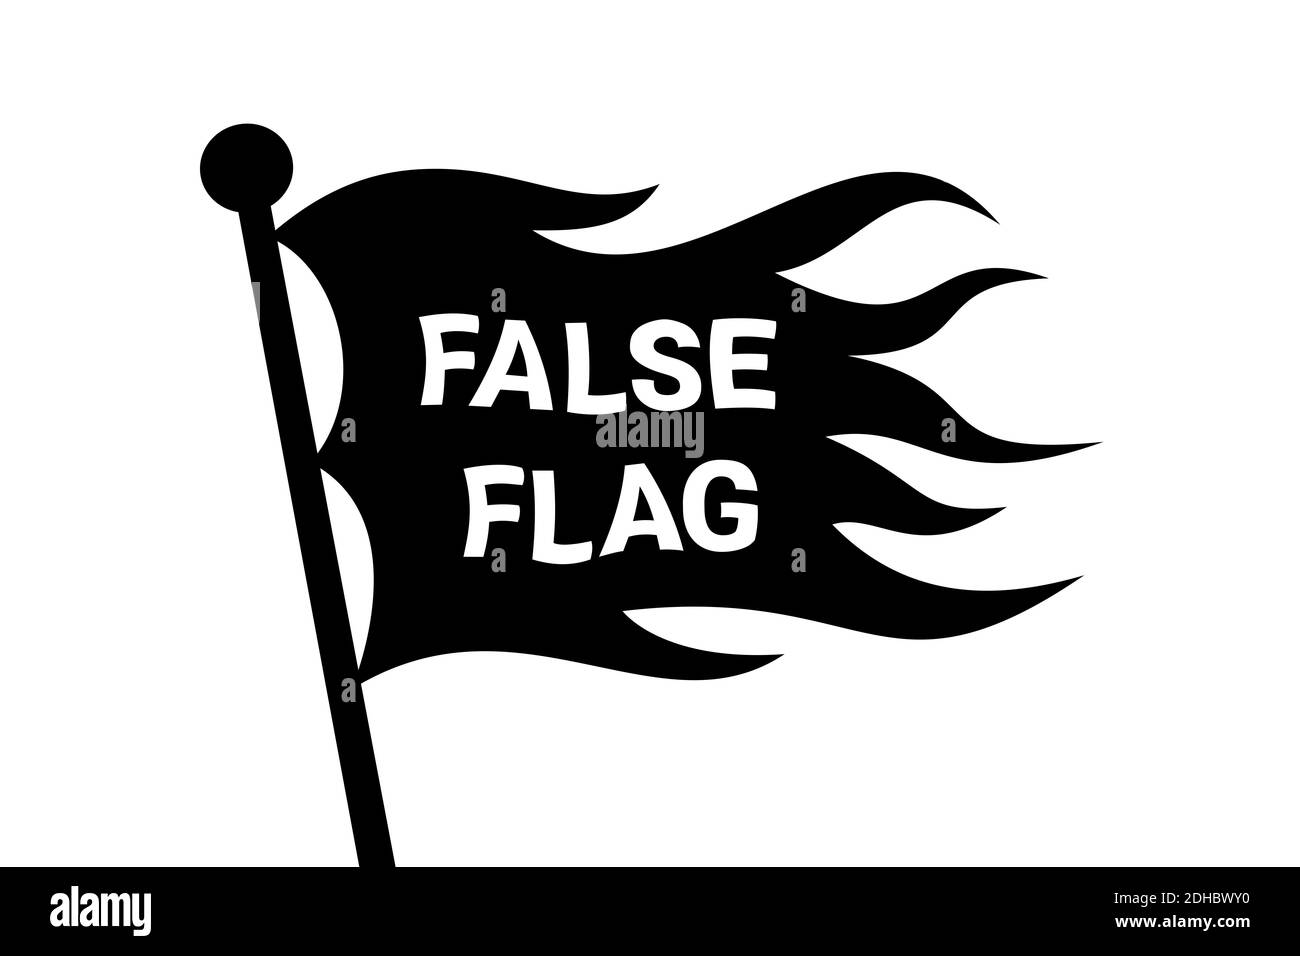 Gewellte Falsche Flagge auf der Stange - verdeckte Identität als Methode der Täuschung und des Betrugs. Manipulative Tarnung. Vektorgrafik Stockfoto